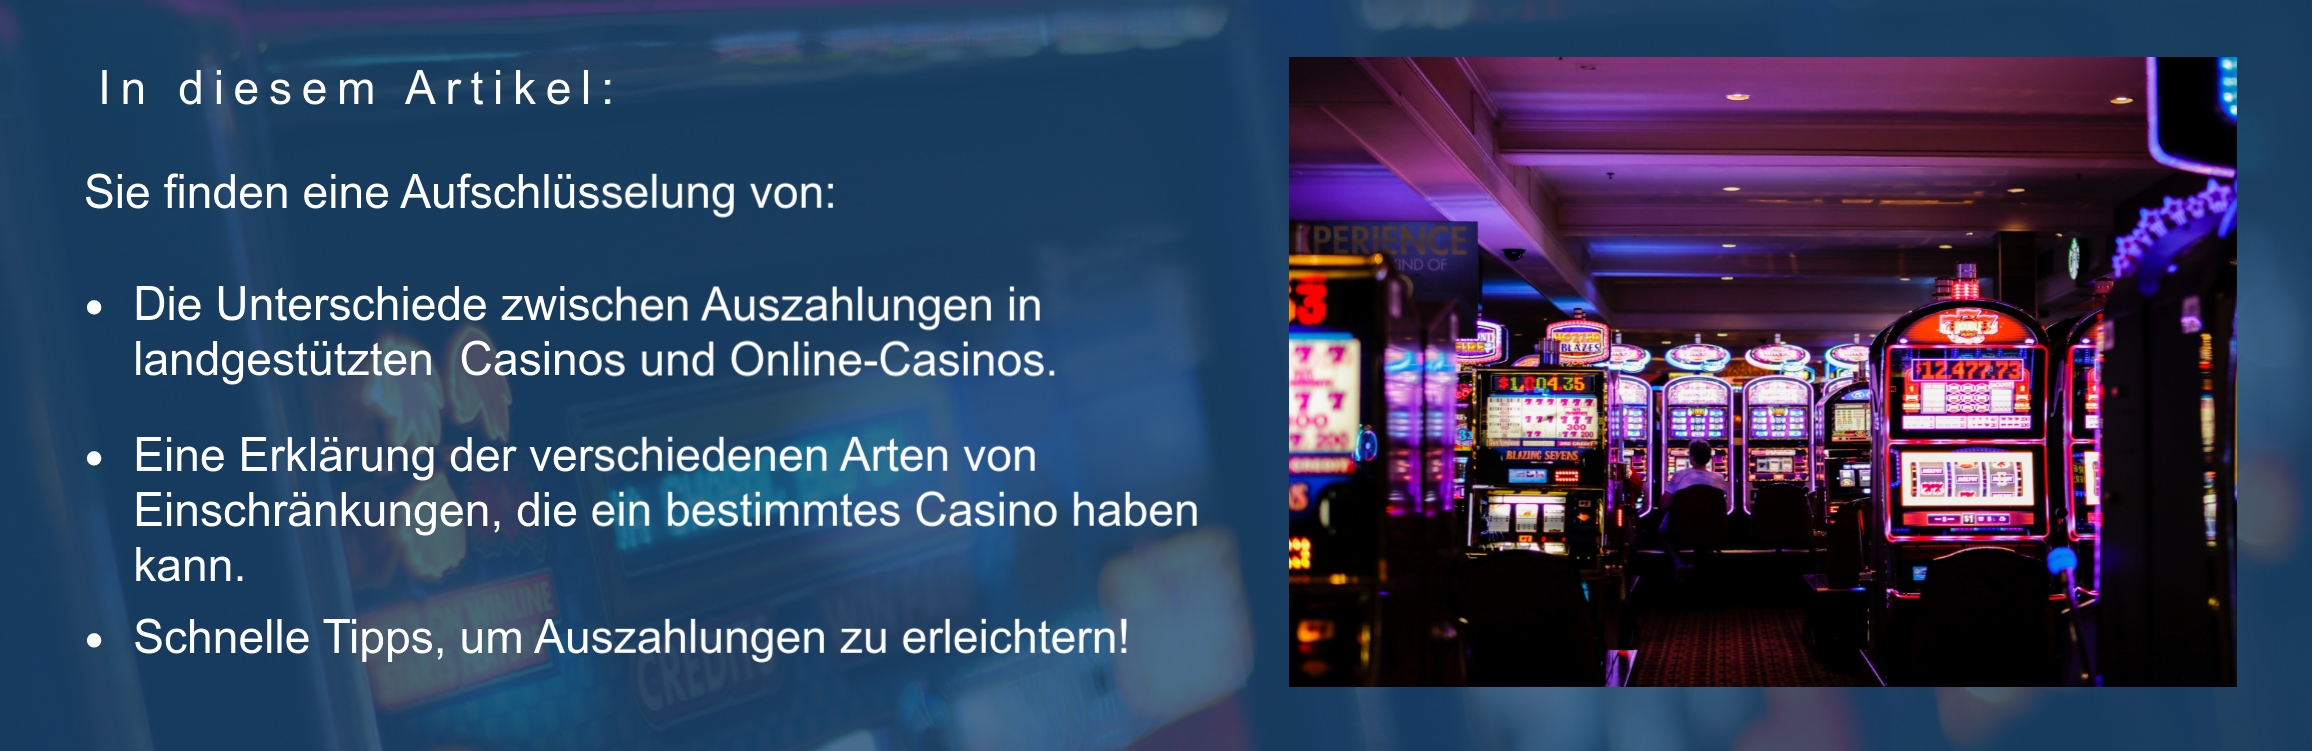 Online Casino auszahlung